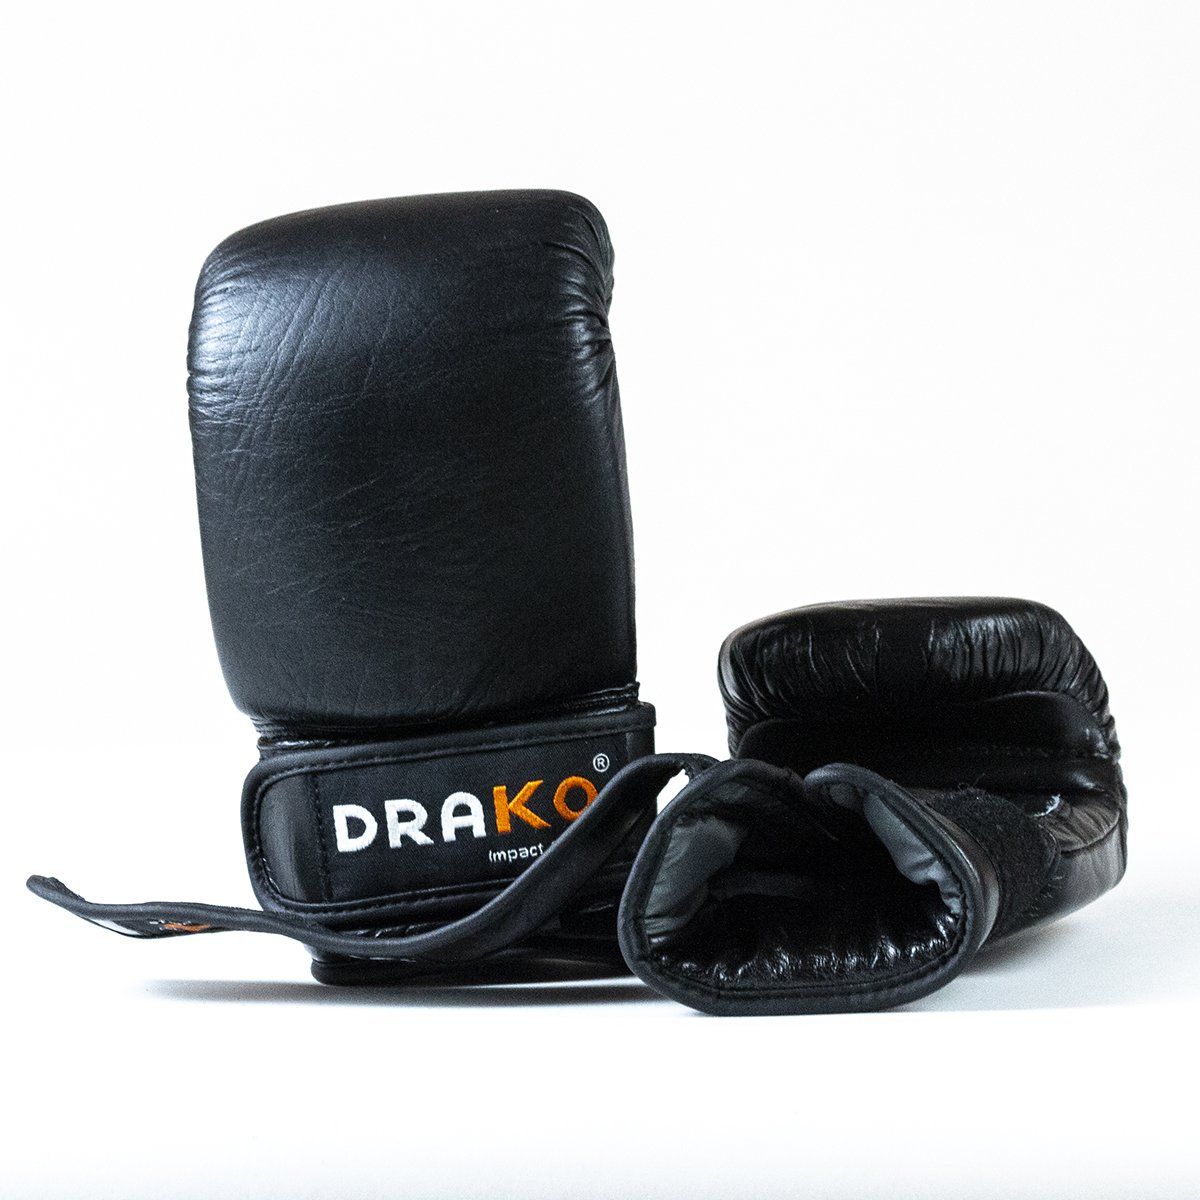 Drako Leather Bag Gloves